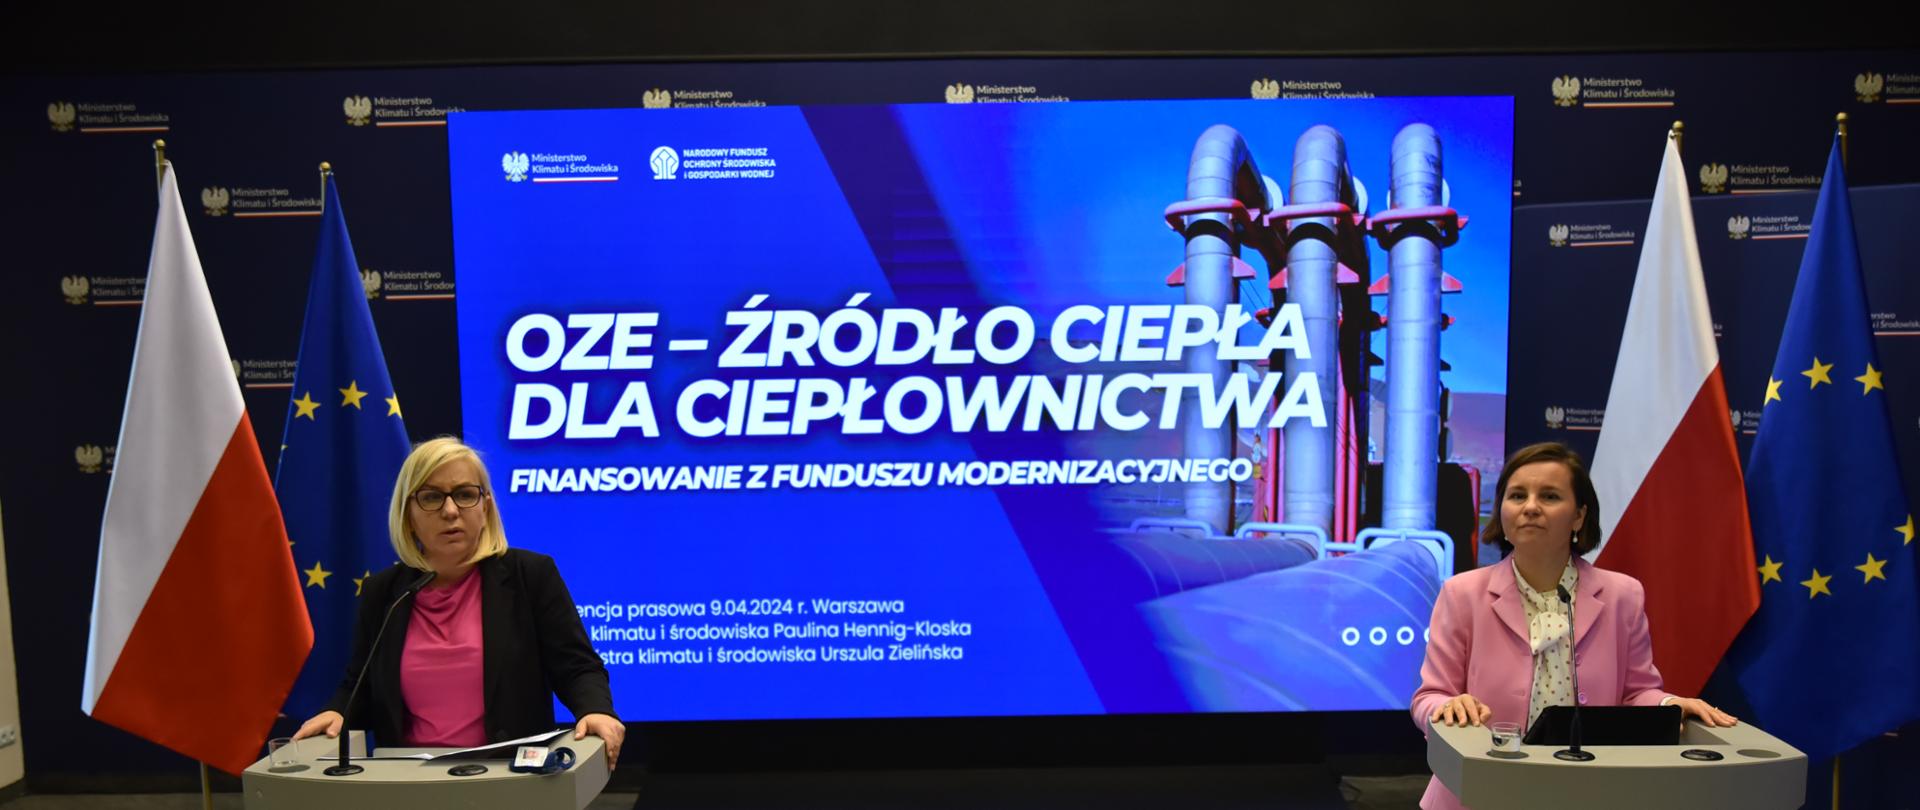 Minister klimatu i środowiska paulina Hennig-Kloska i wiceministra Urszula Zielińska w trakcie konferencji prasowej